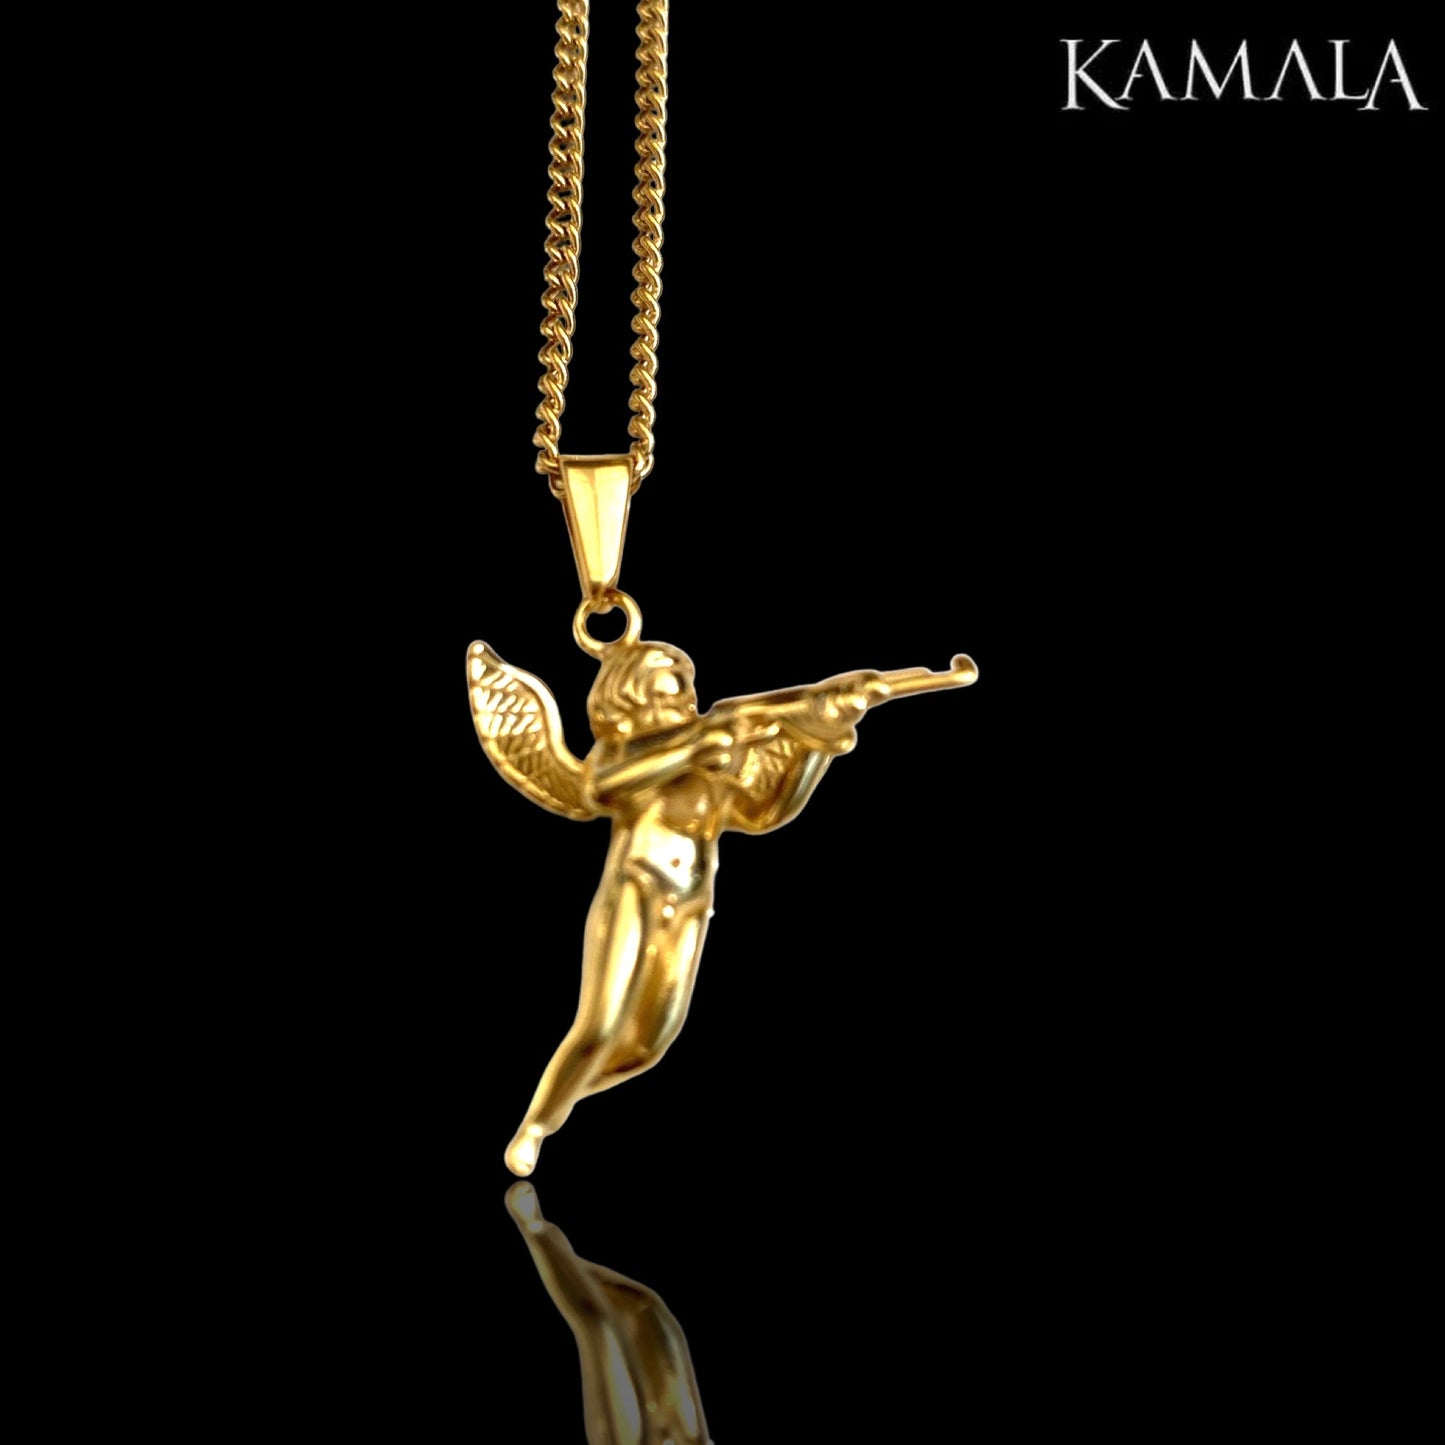 Halskette - Engel mit AK47 - Golden